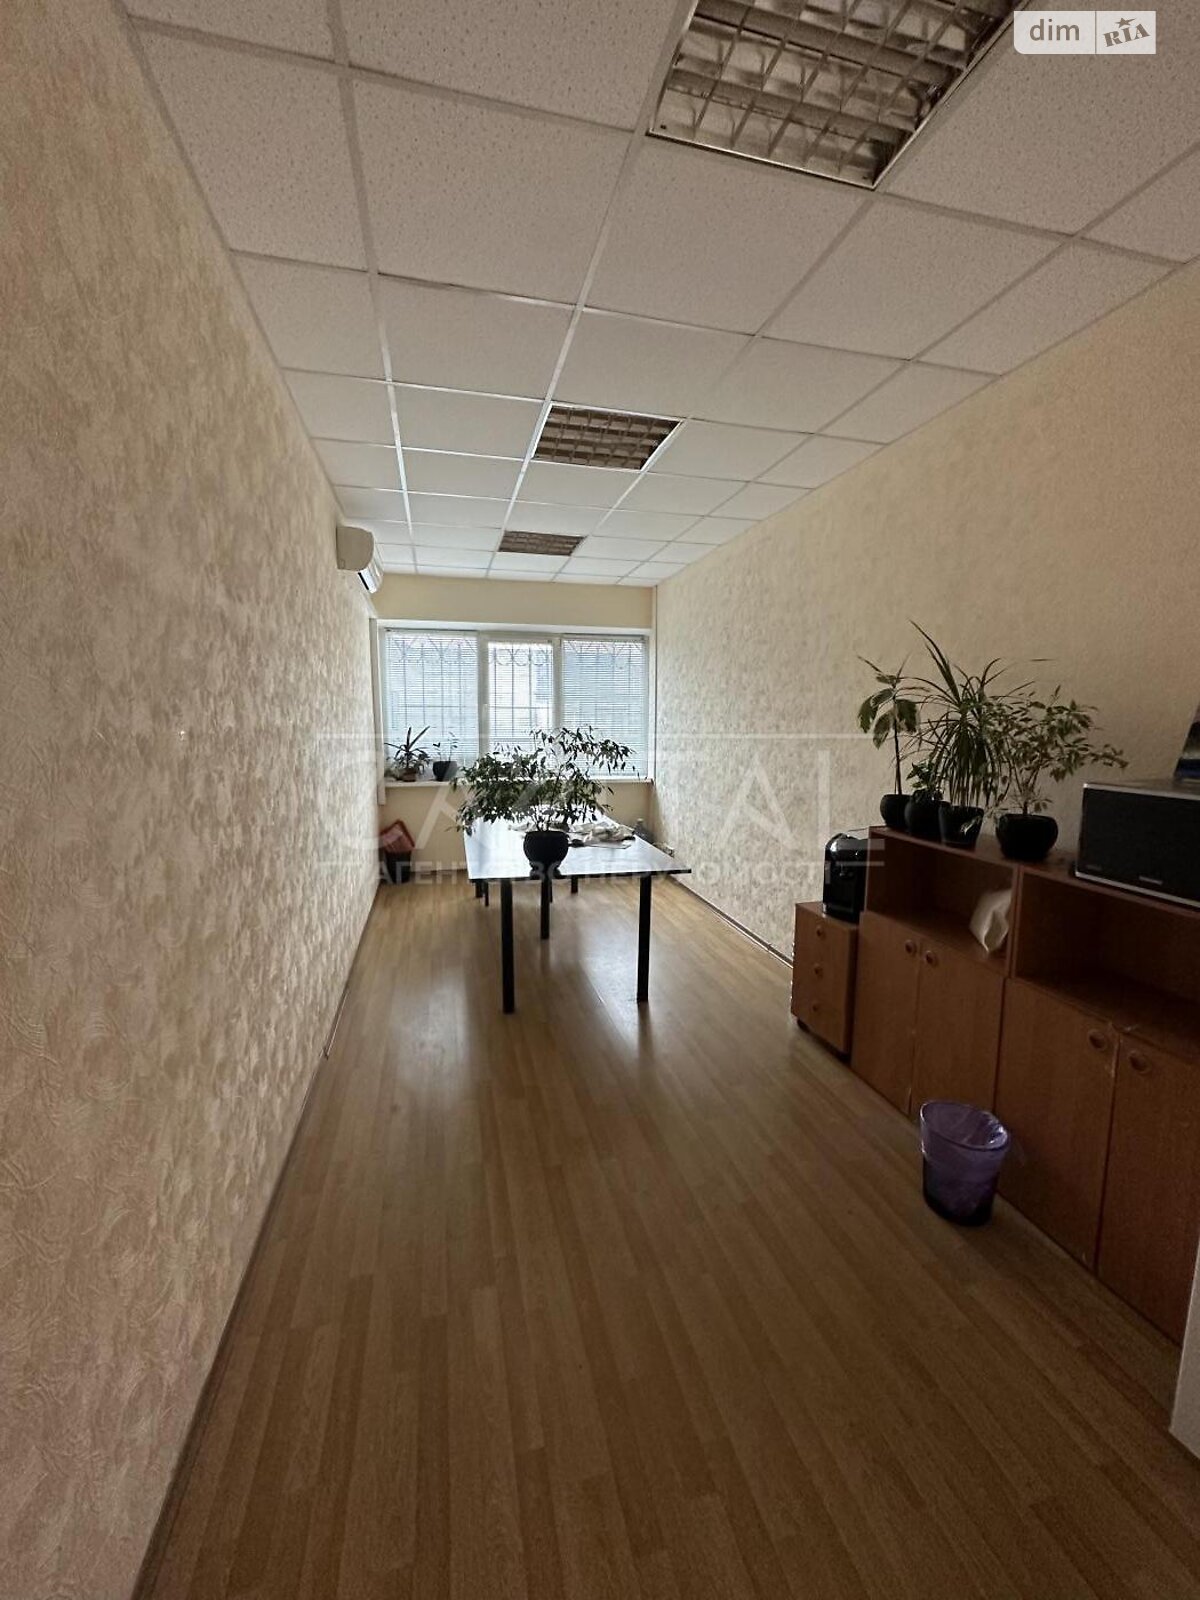 Аренда офисного помещения в Киеве, святослава хороброго, помещений - 15, этаж - 1 фото 1